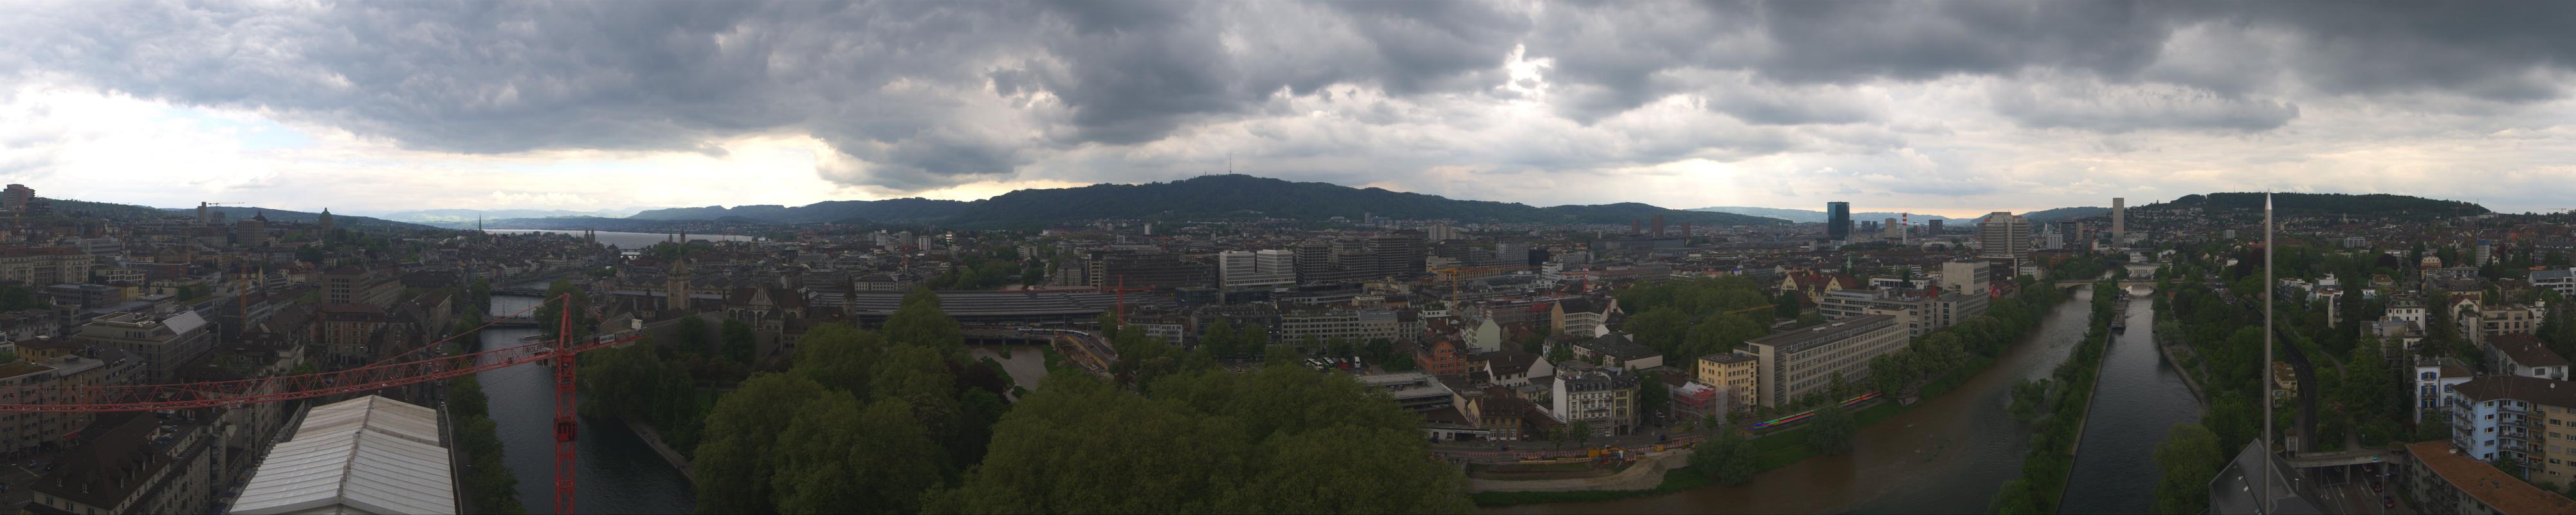 Zürich West